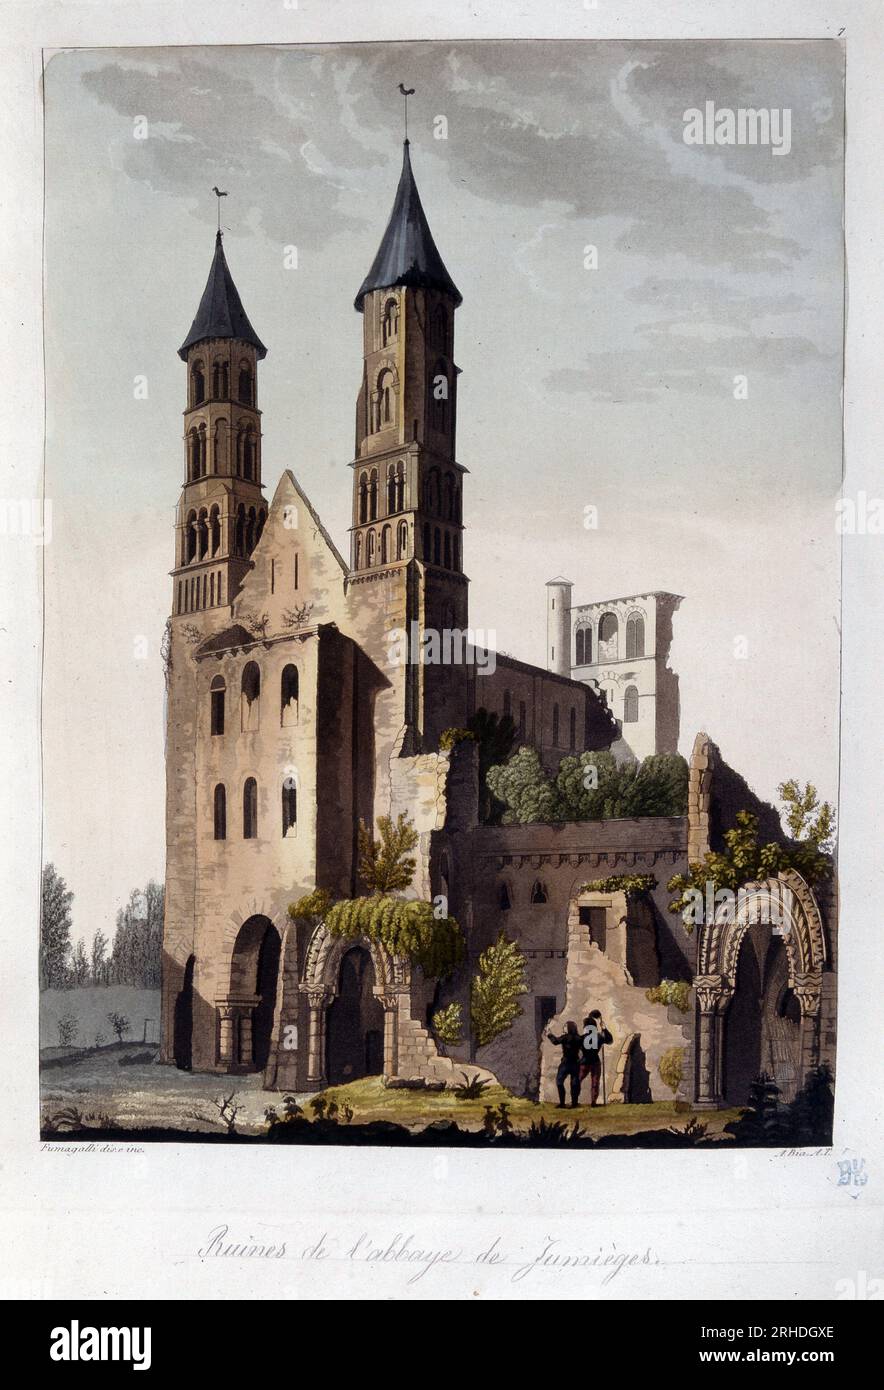 Ruines de l'abbaye de Jumieges - in 'Le costume ancien et modern' par le Dr. Ferrario, 1819-20 Stockfoto